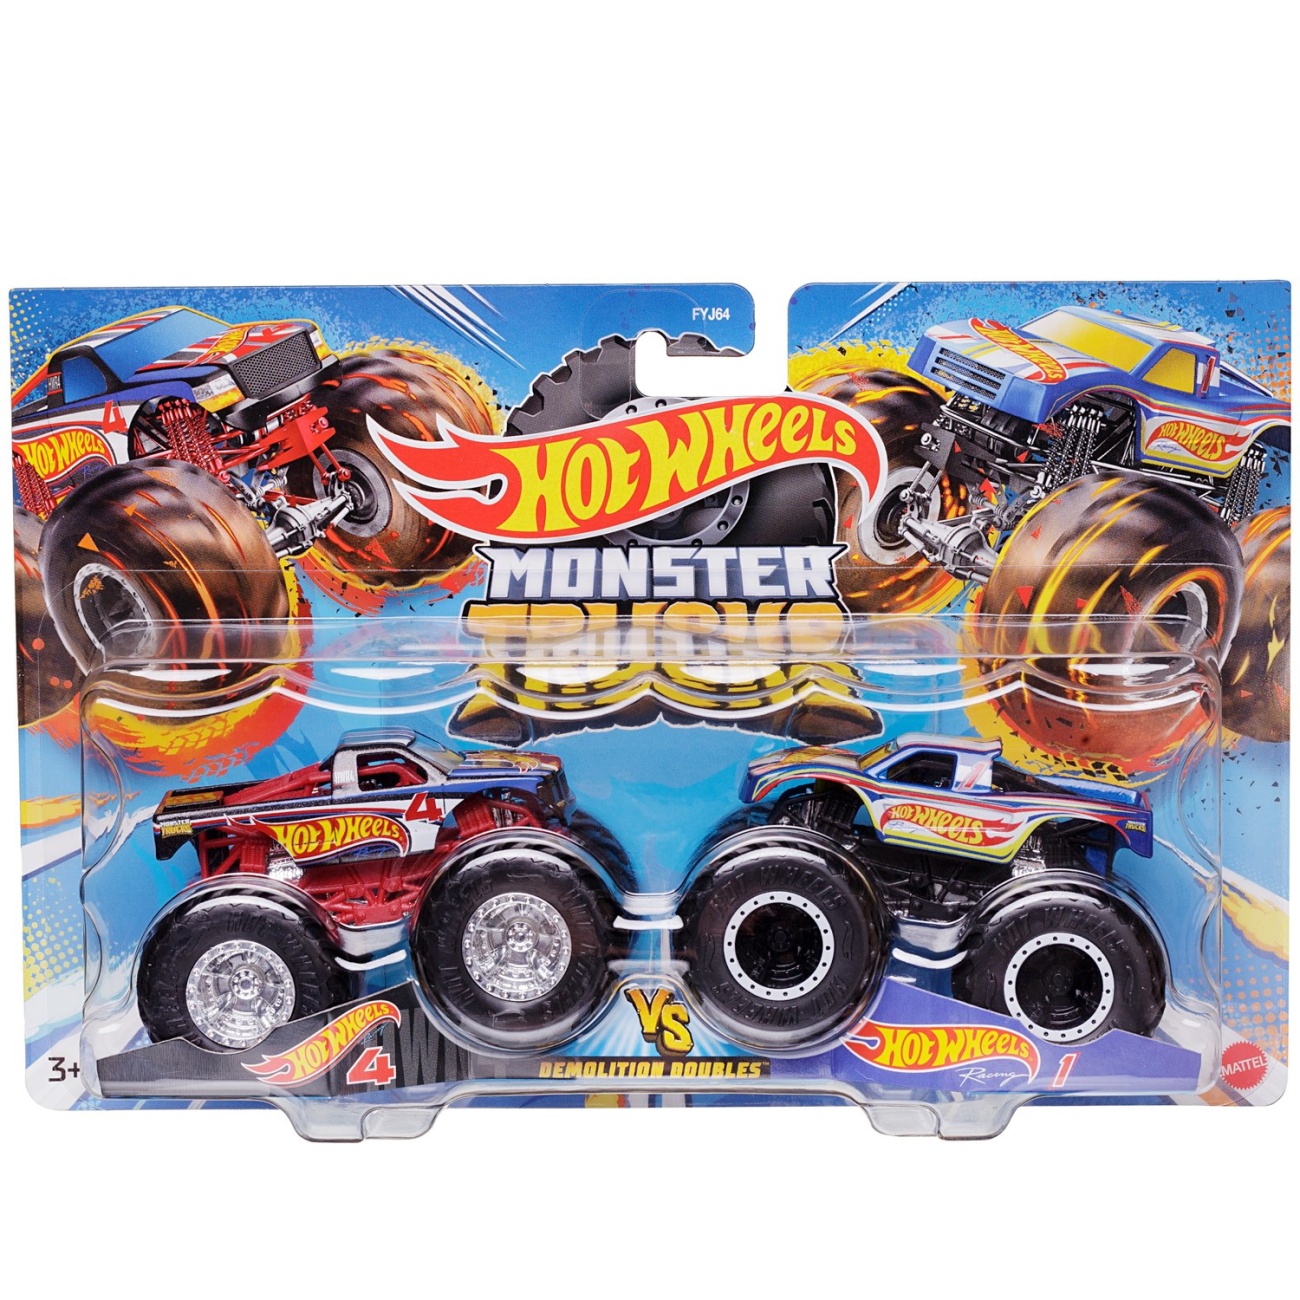 Игровой набор Mattel Hot Wheels Машинки Монстер трак взаимное уничтожение, набор из 2-х штук №5 FYJ64/5